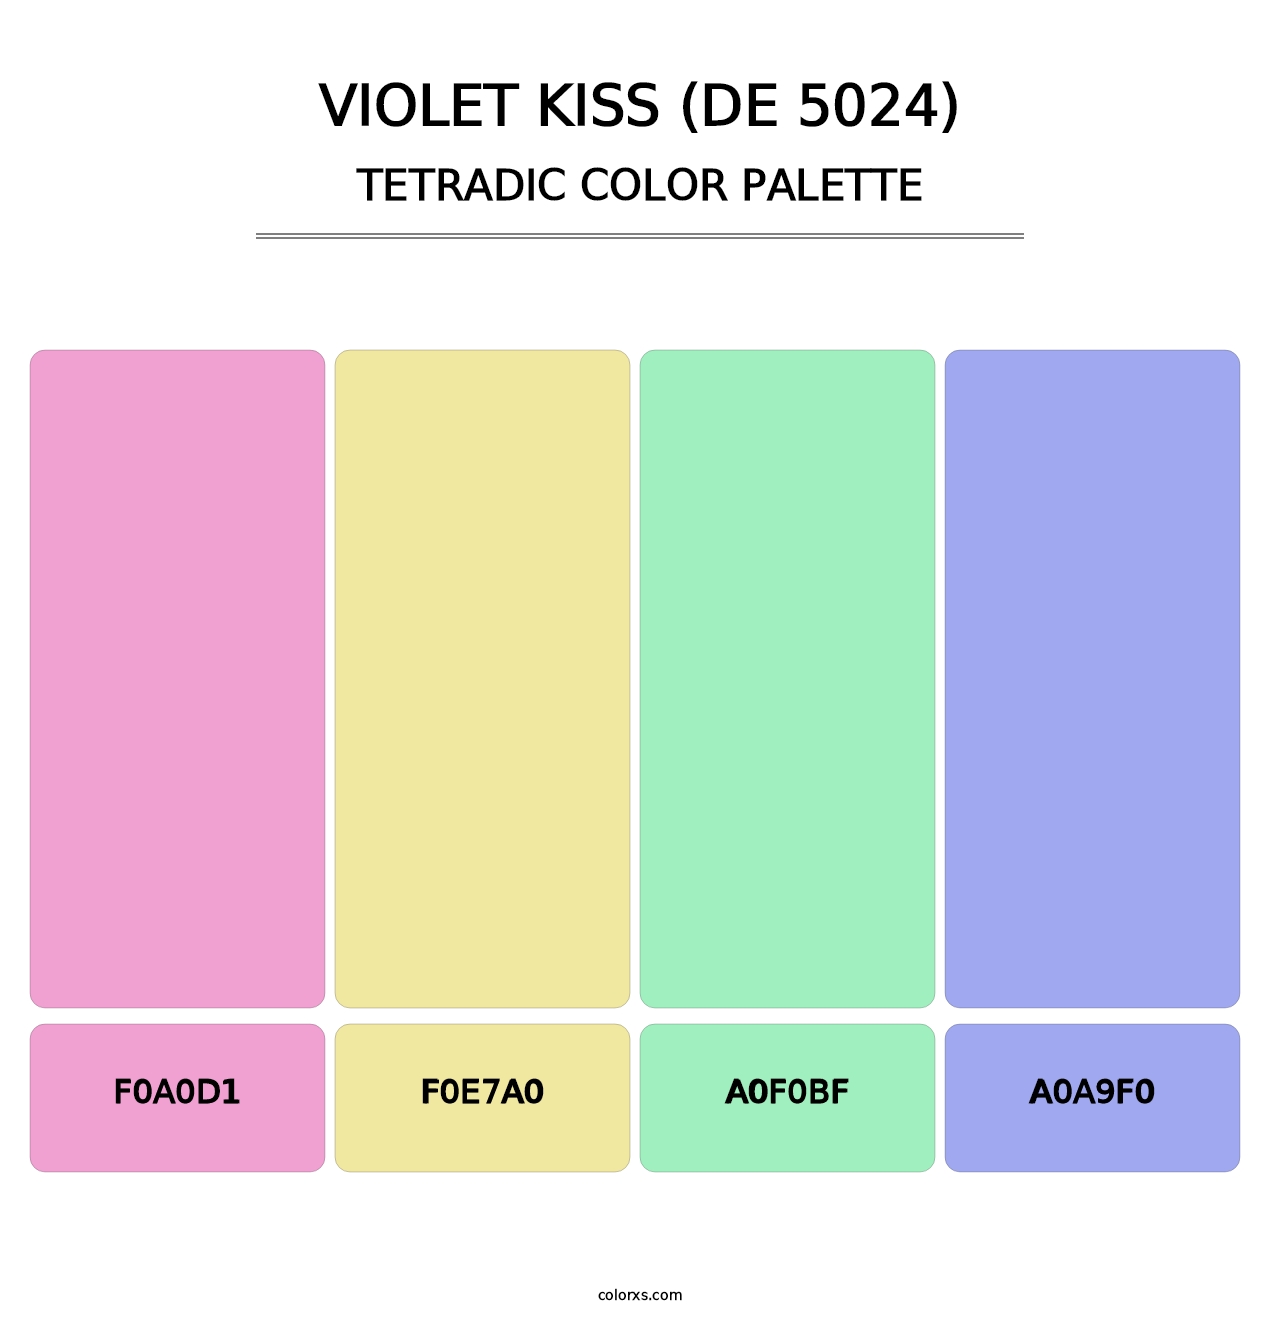 Violet Kiss (DE 5024) - Tetradic Color Palette